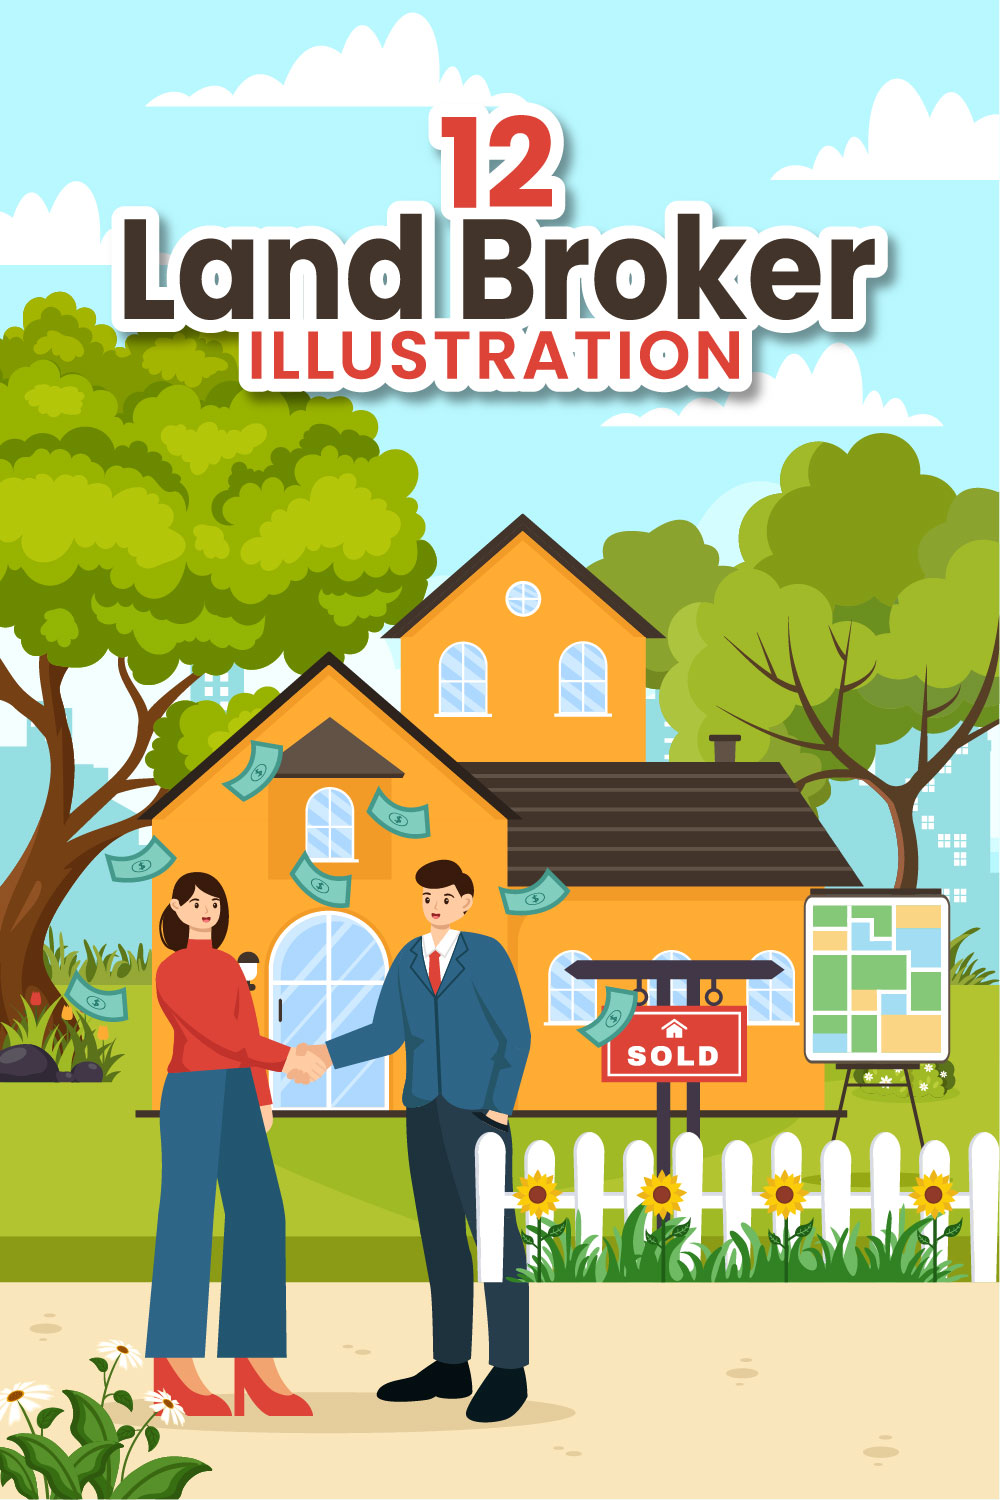 12 Land Broker Illustration pinterest preview image.